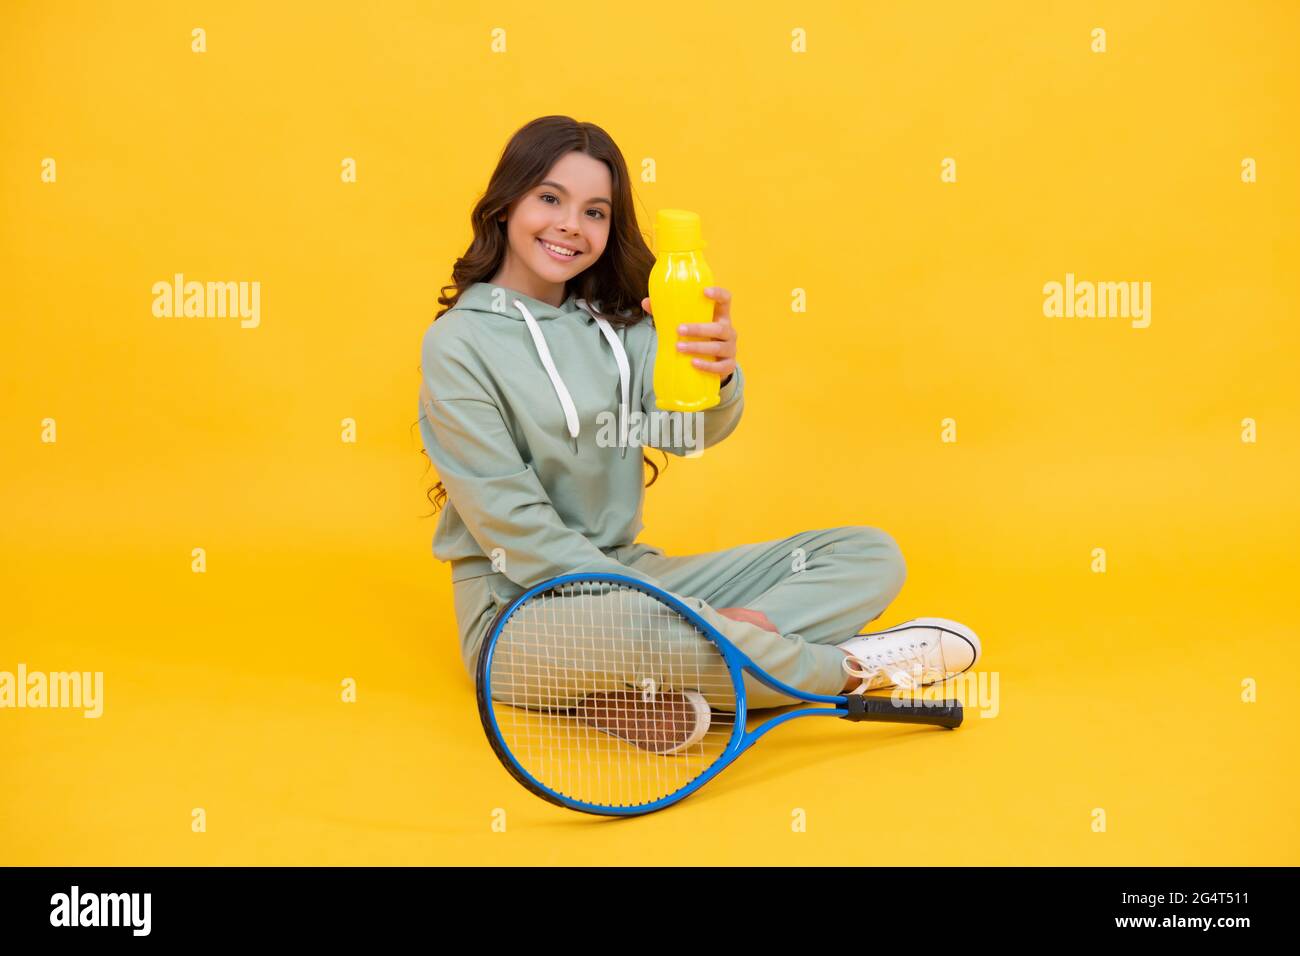 un enfant s'assoit avec une raquette et une bouteille d'eau. un enfant avec une raquette de tennis. une jeune fille boit de l'eau Banque D'Images